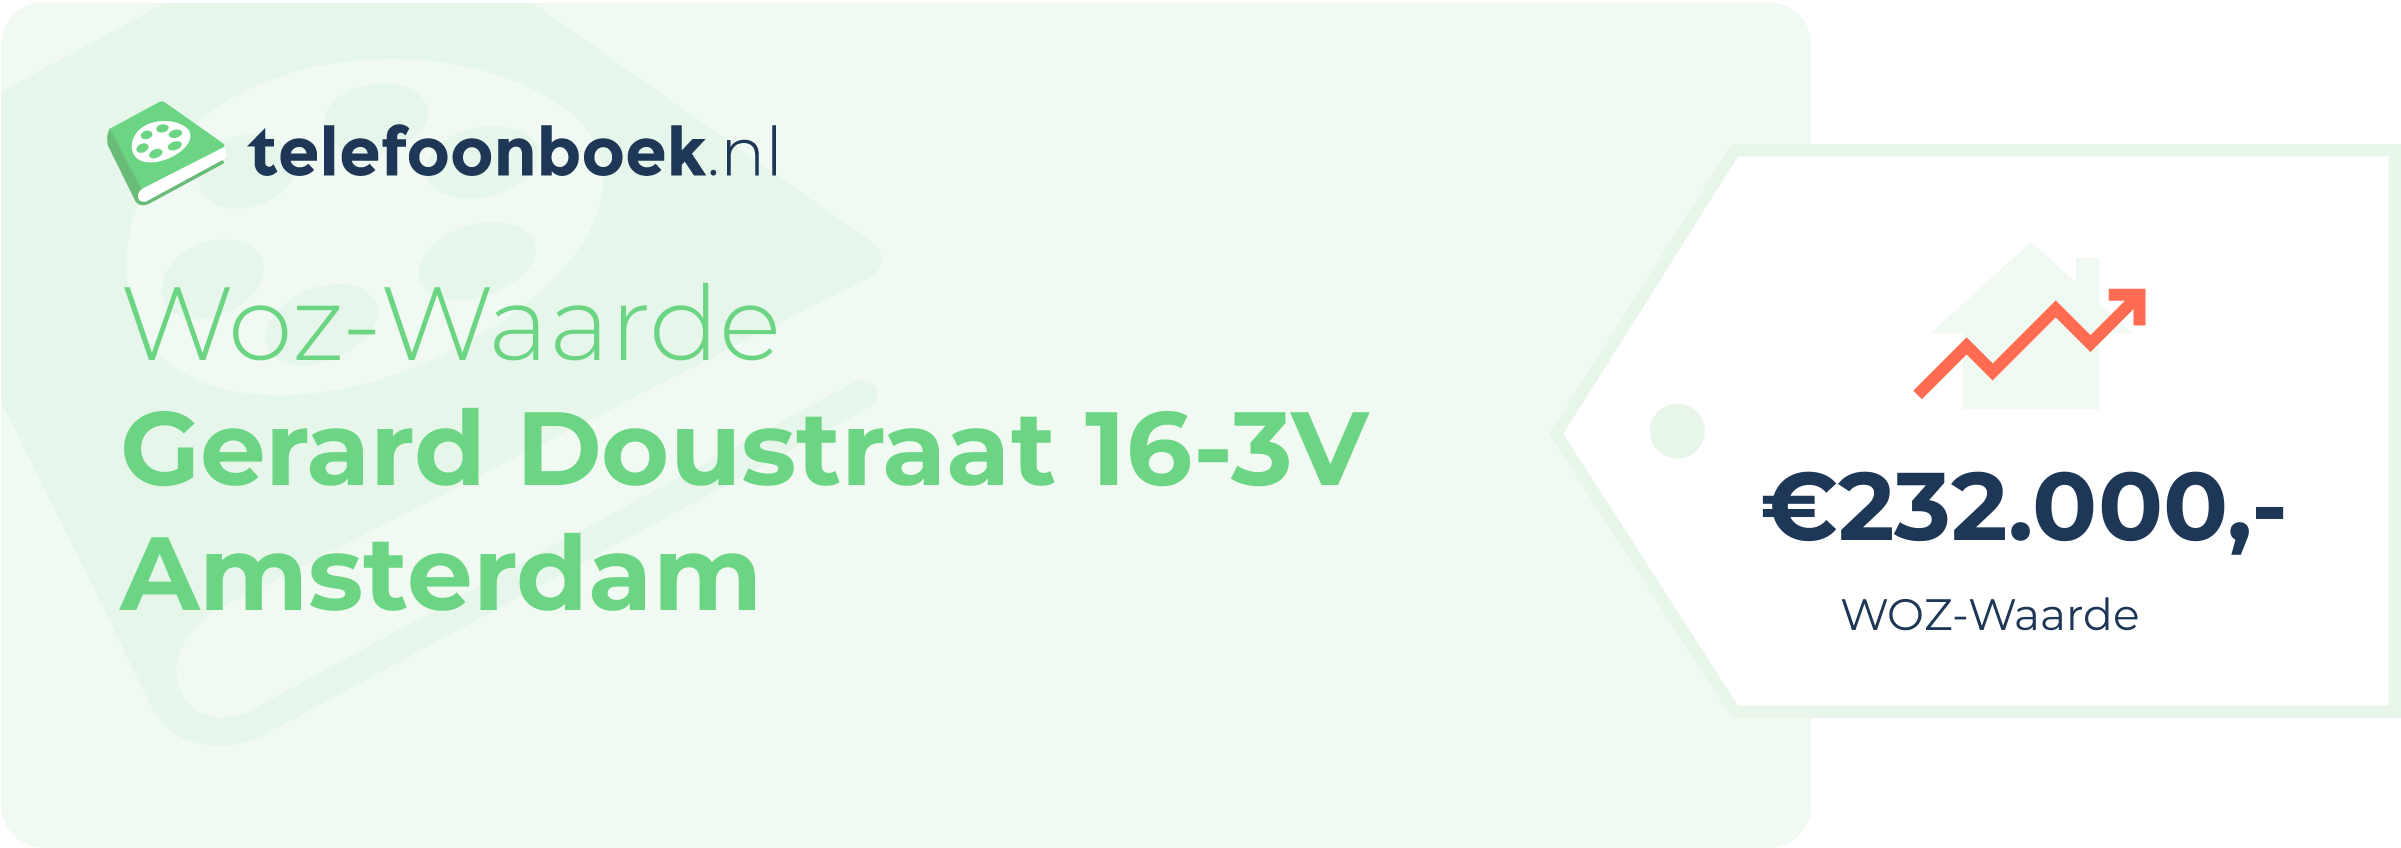 WOZ-waarde Gerard Doustraat 16-3V Amsterdam